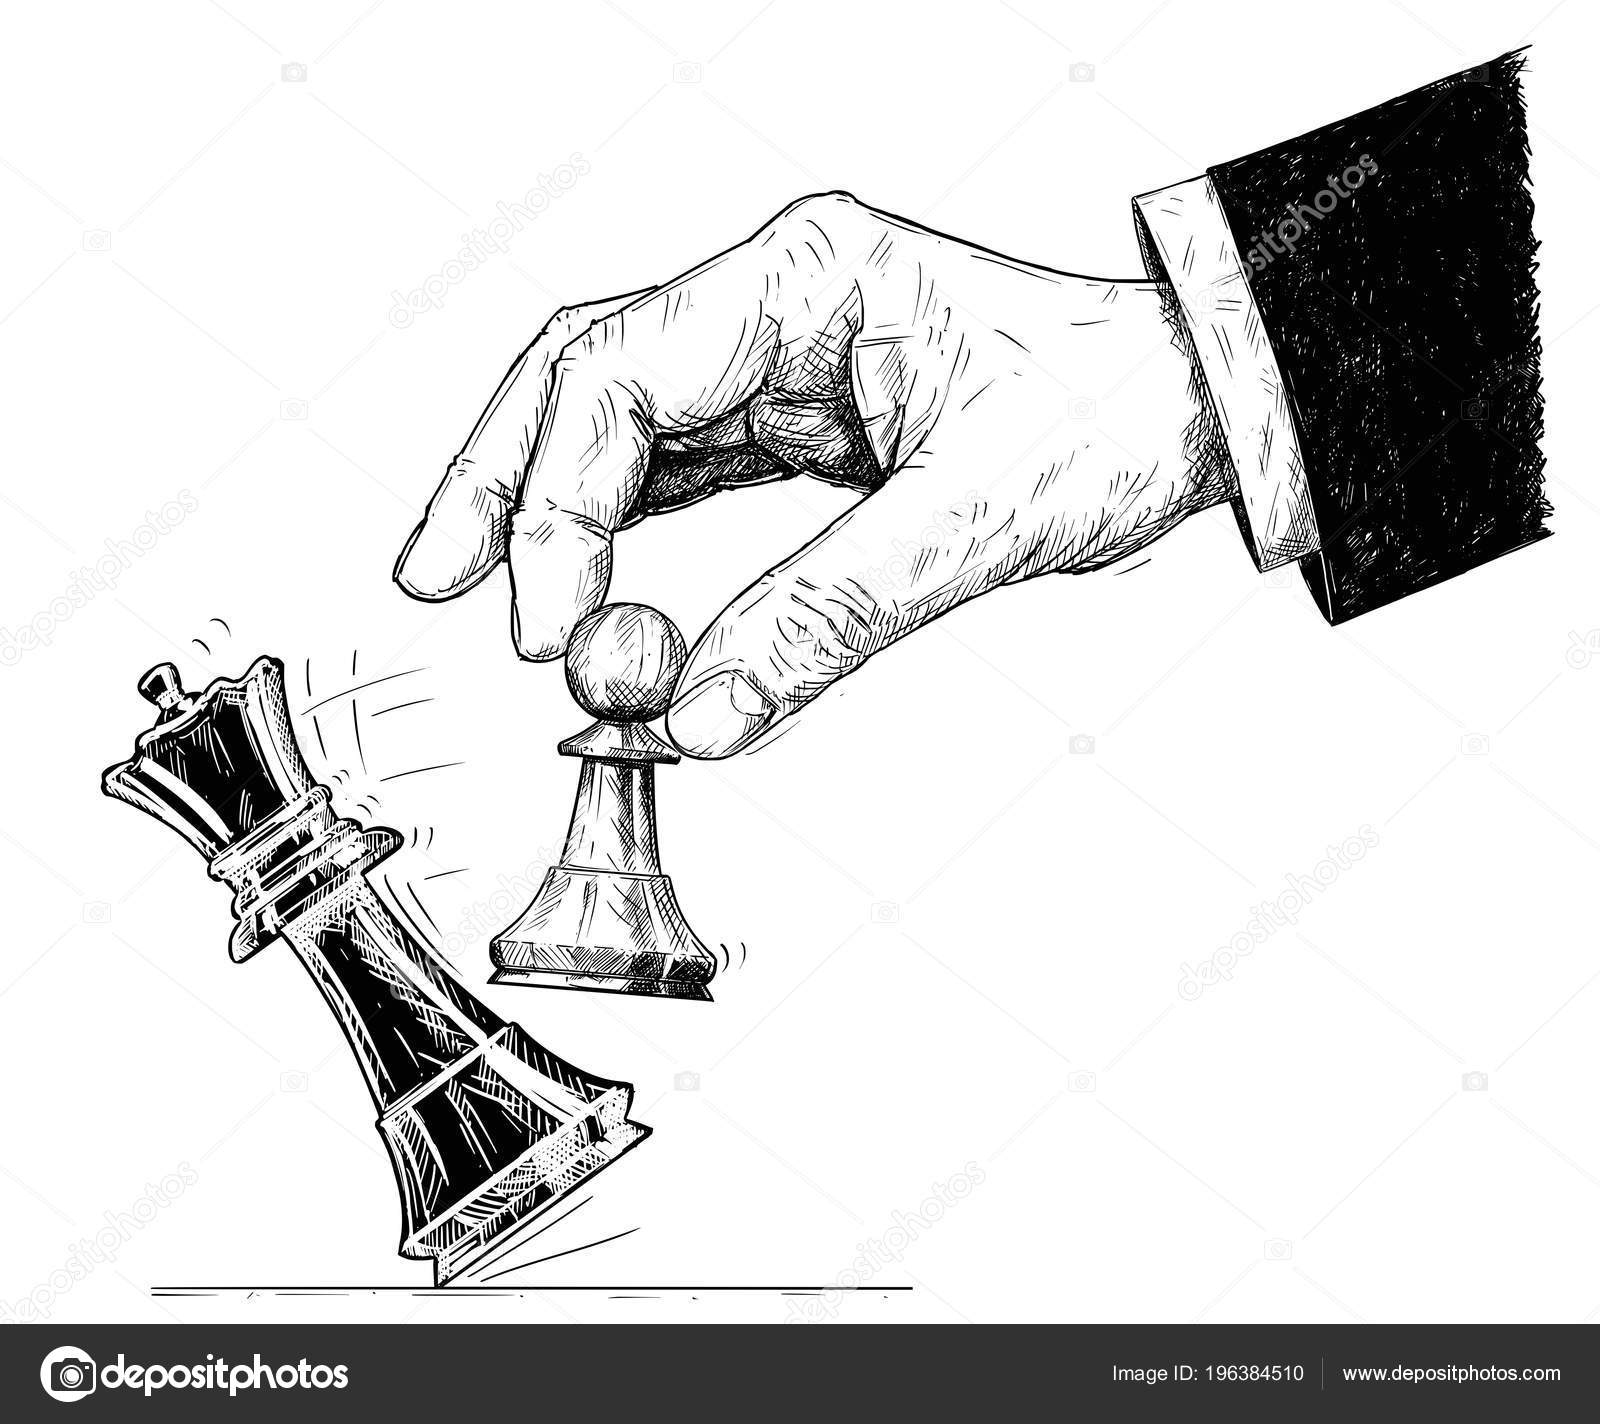 mão segurando uma peça de xadrez, símbolo de xeque-mate do jogo de